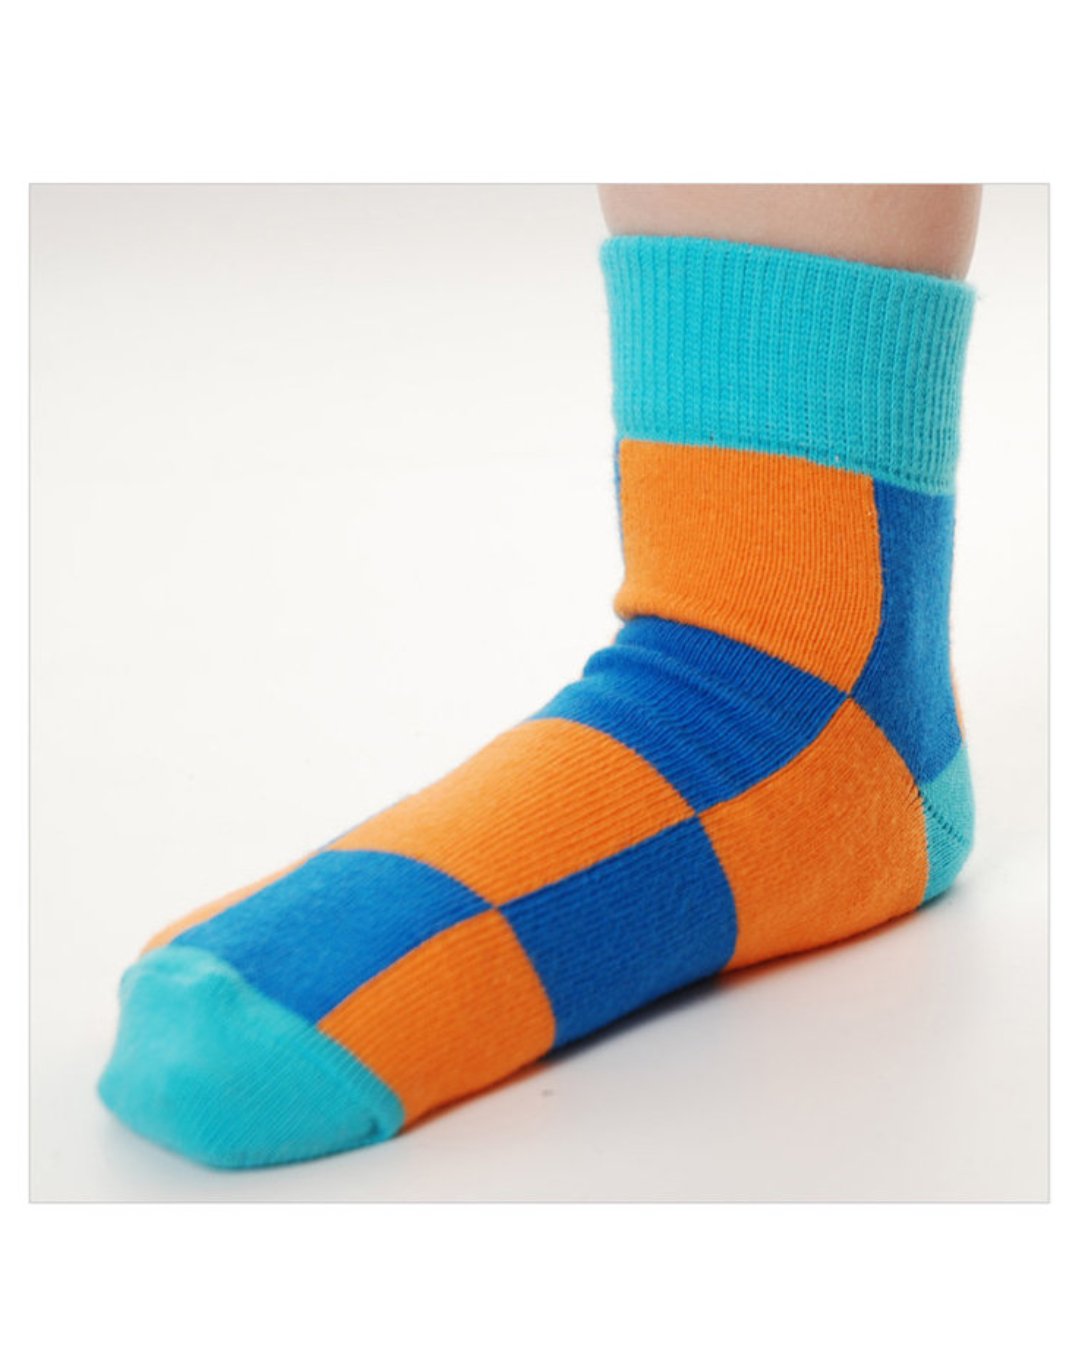 Blau orange gekachelte Socken für Kinder aus Biobaumwolle von DUNS Sweden